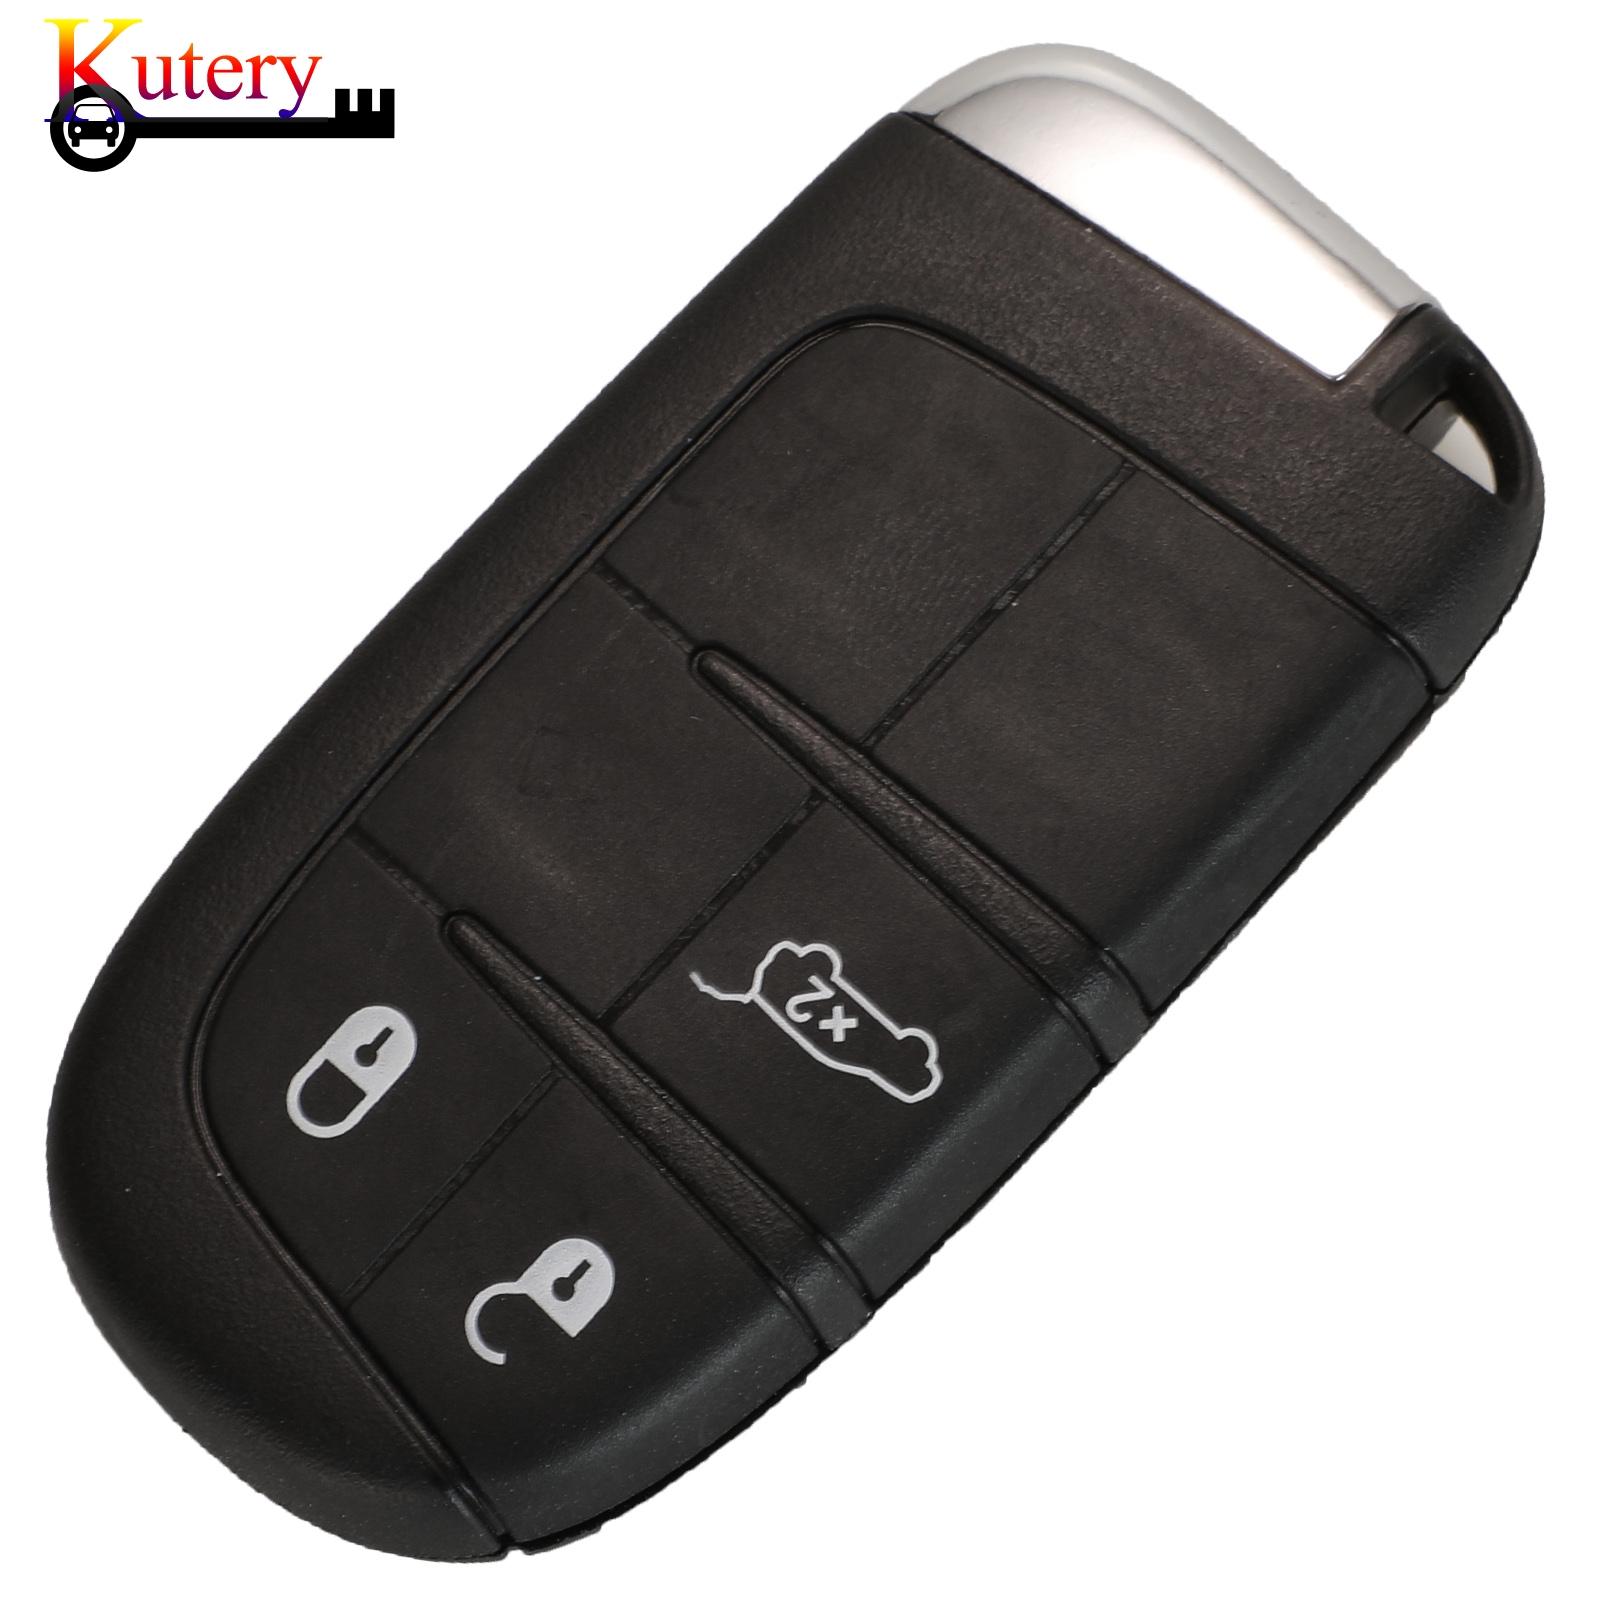 Изображение товара: Оригинальный дистанционный умный Автомобильный ключ Kutery для Jeep Renegade Compass 2/3/4 кнопочный телефон 433 МГц 4A чип без ключа-Go SIP22 Blade